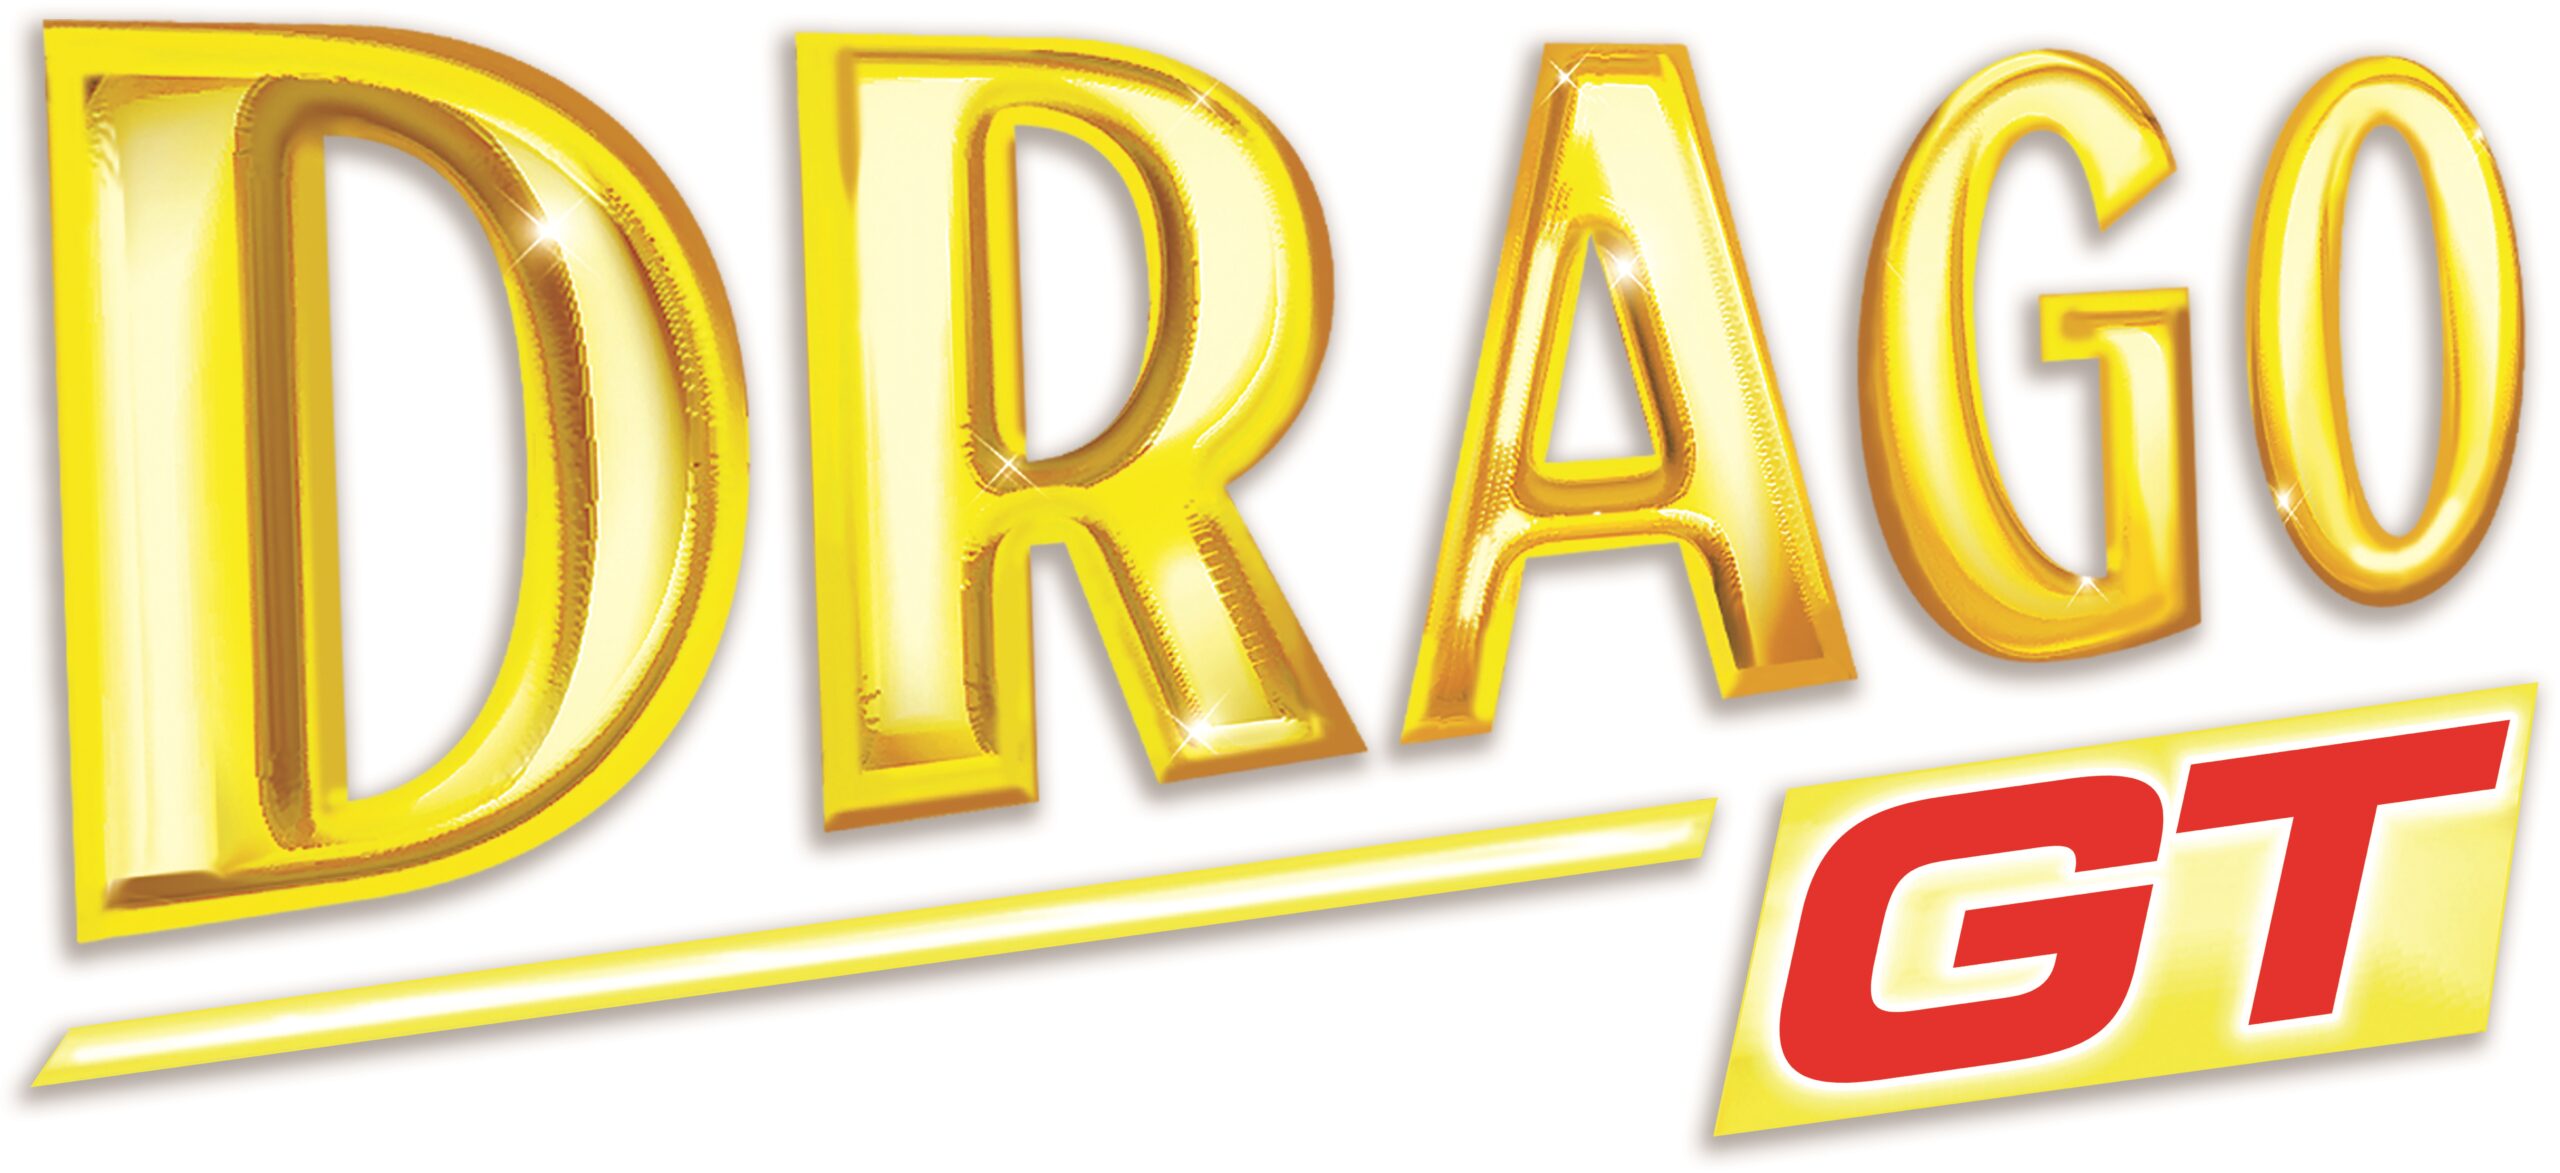 DRAGO_GT_logo